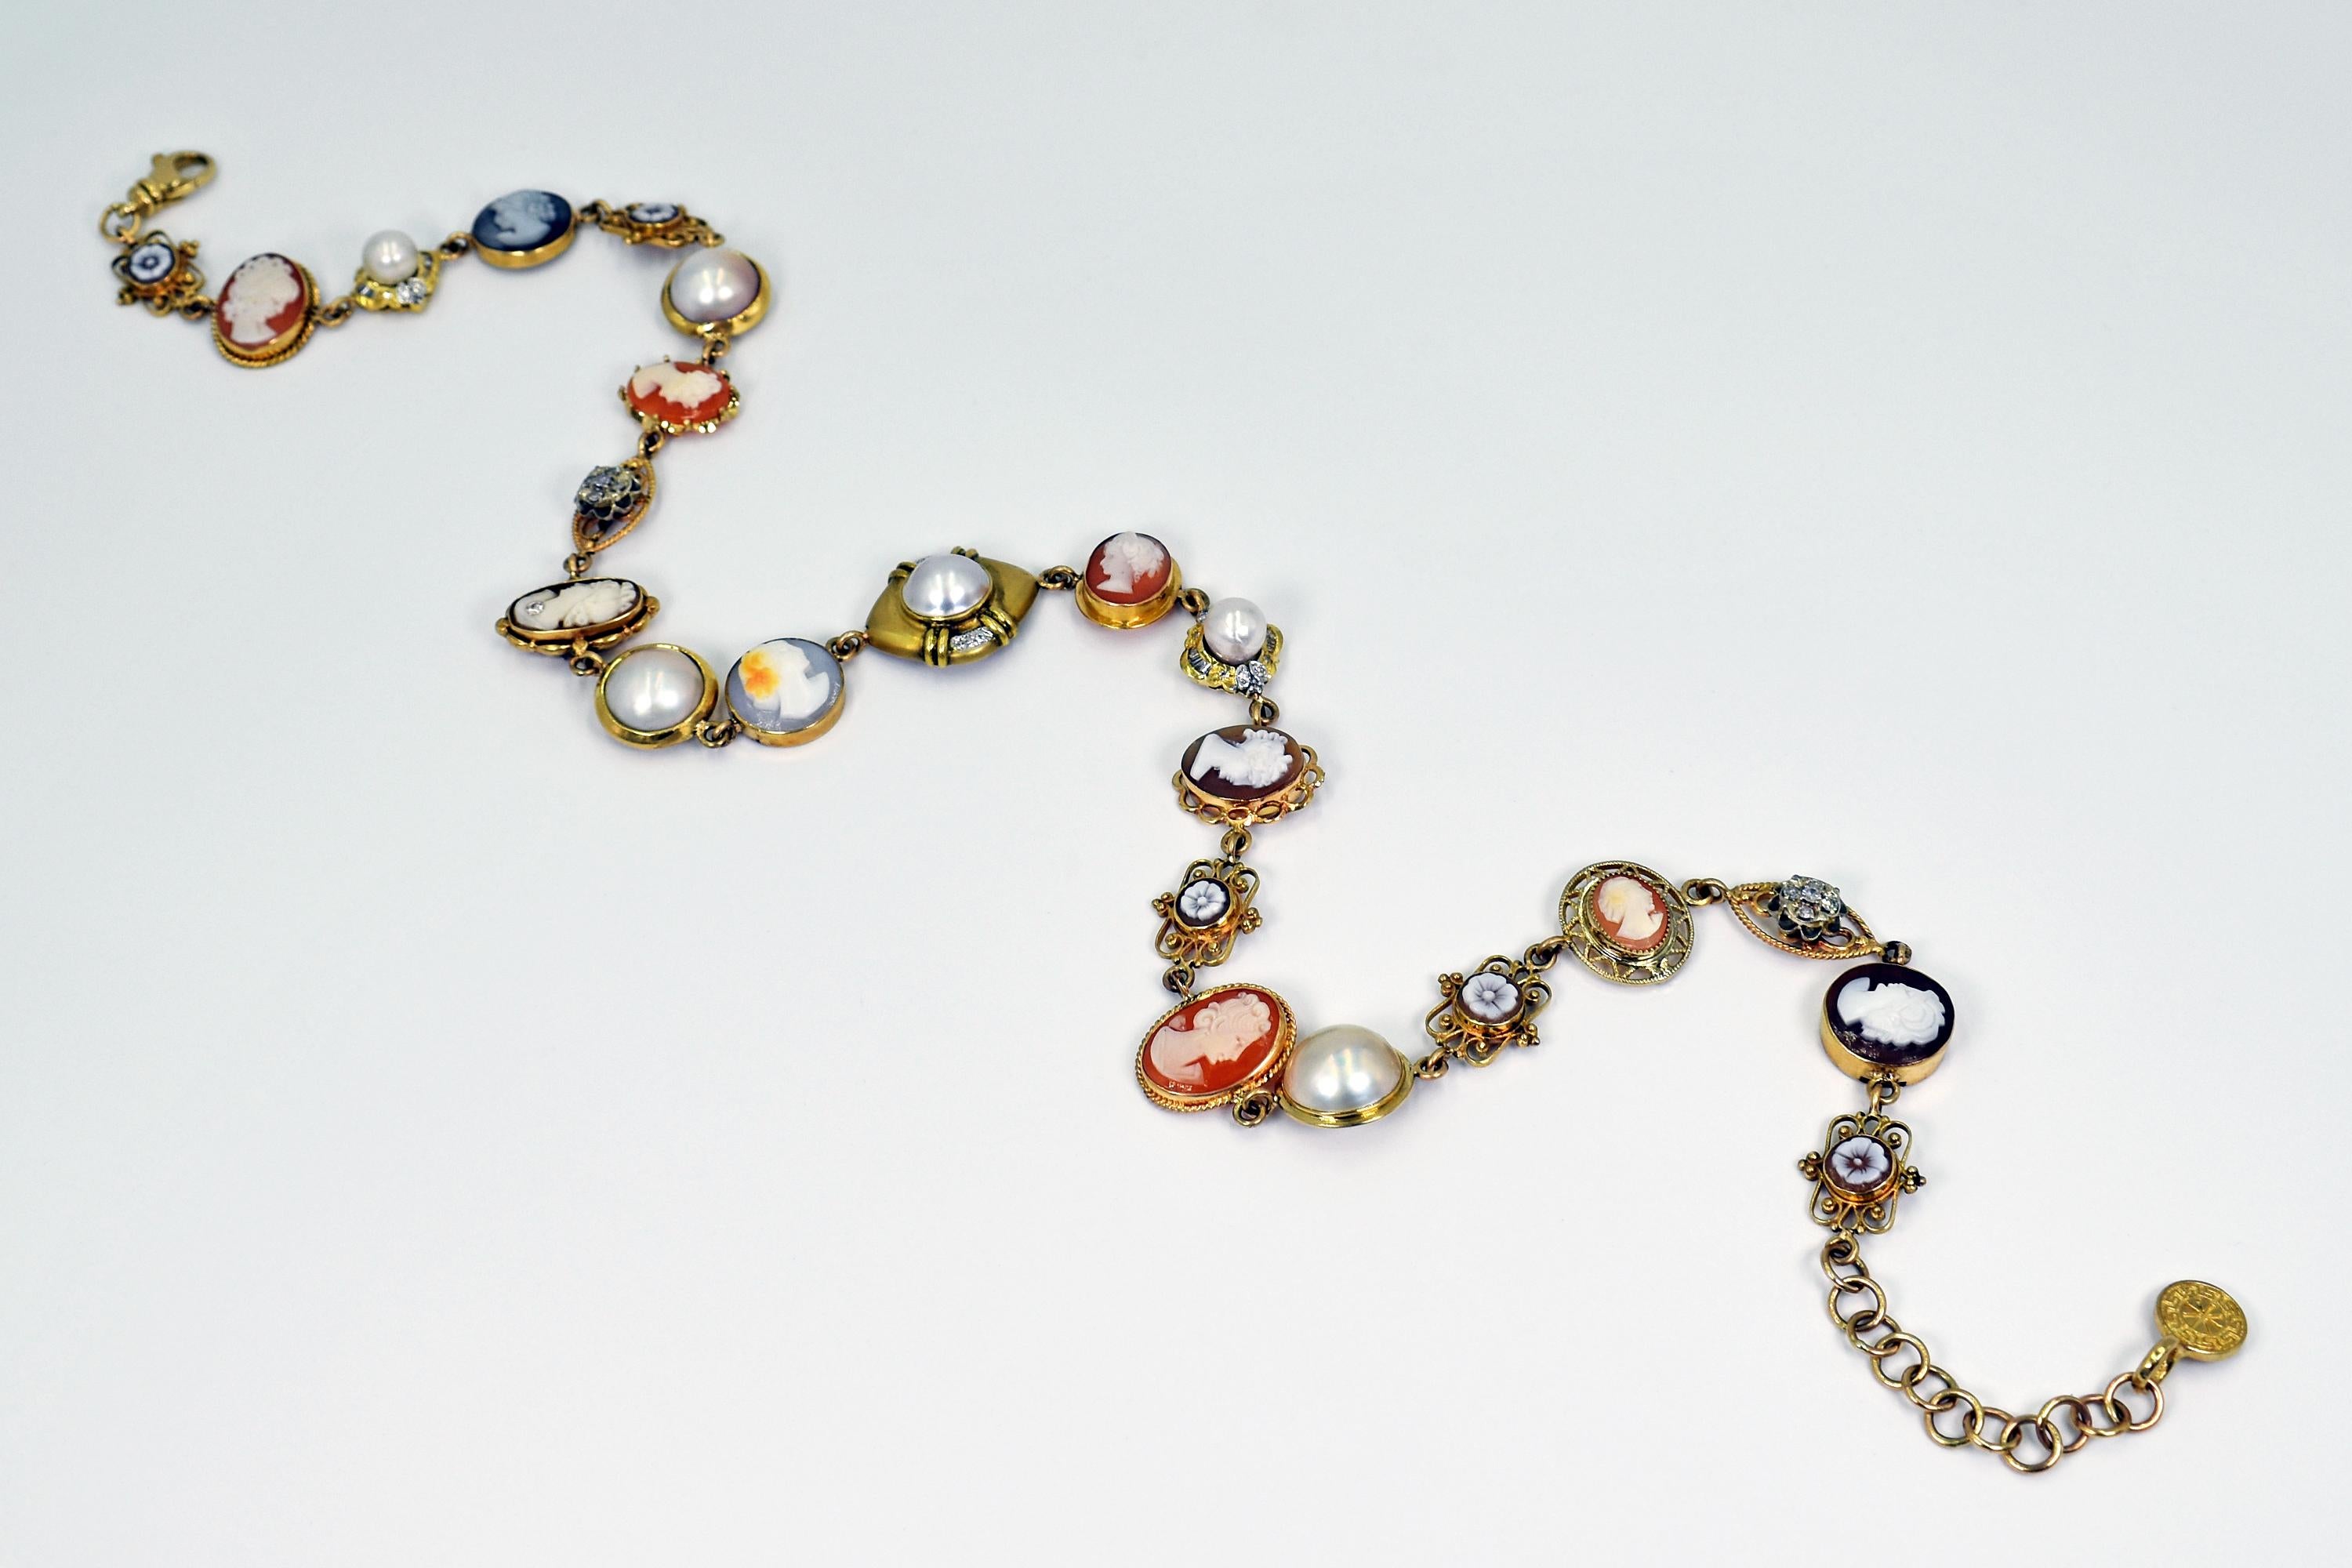 Einzigartige Vicky Orr 14k Gelbgold Bohemian Halskette mit 23 einzigartigen Stücken, darunter Vintage und antike Kameen, Süßwasserperlen und weiße Diamanten. Kragen Halskette ist 19 Zoll in der Länge, und ist mit einem Karabiner-Verschluss und zwei